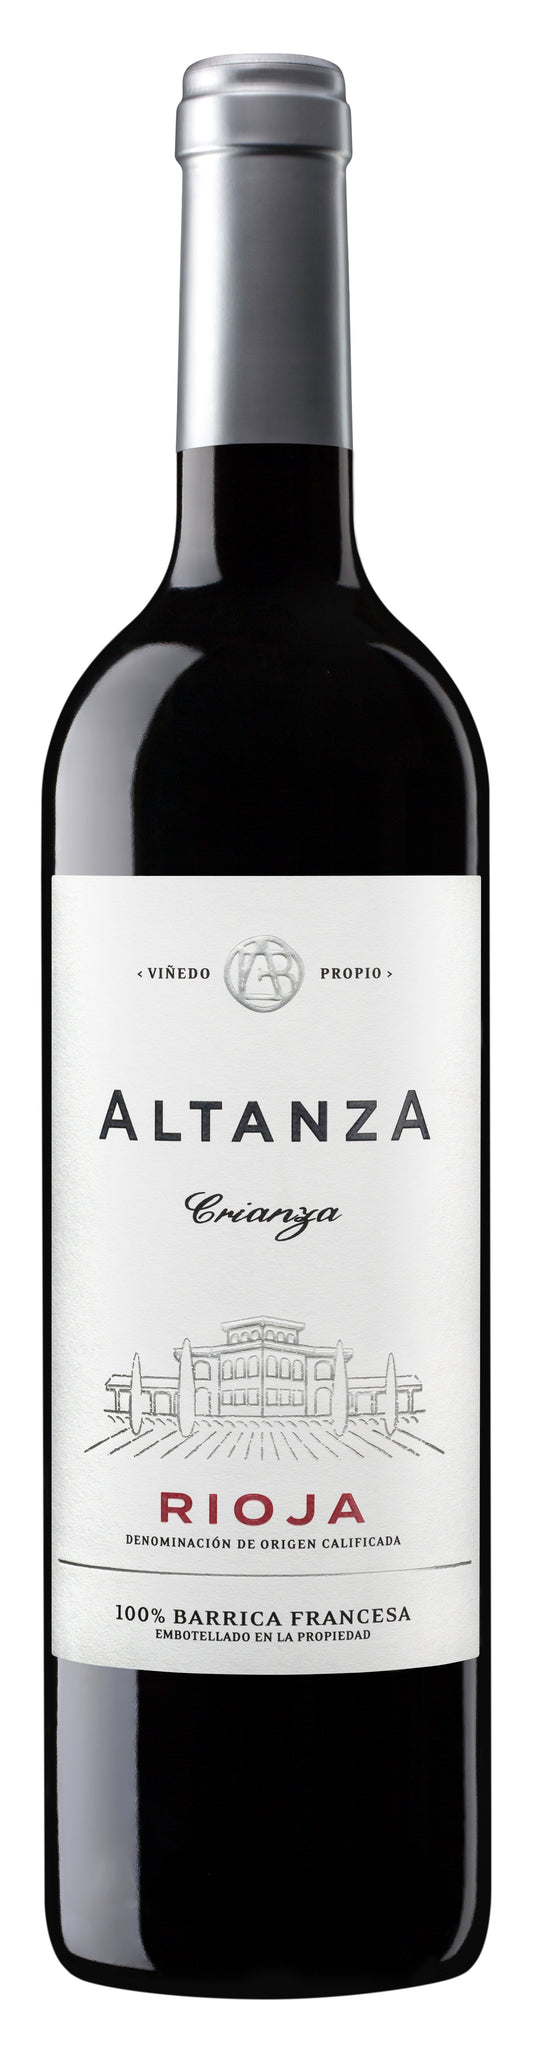 Altanza Crianza Rioja - 2018 (750ml)